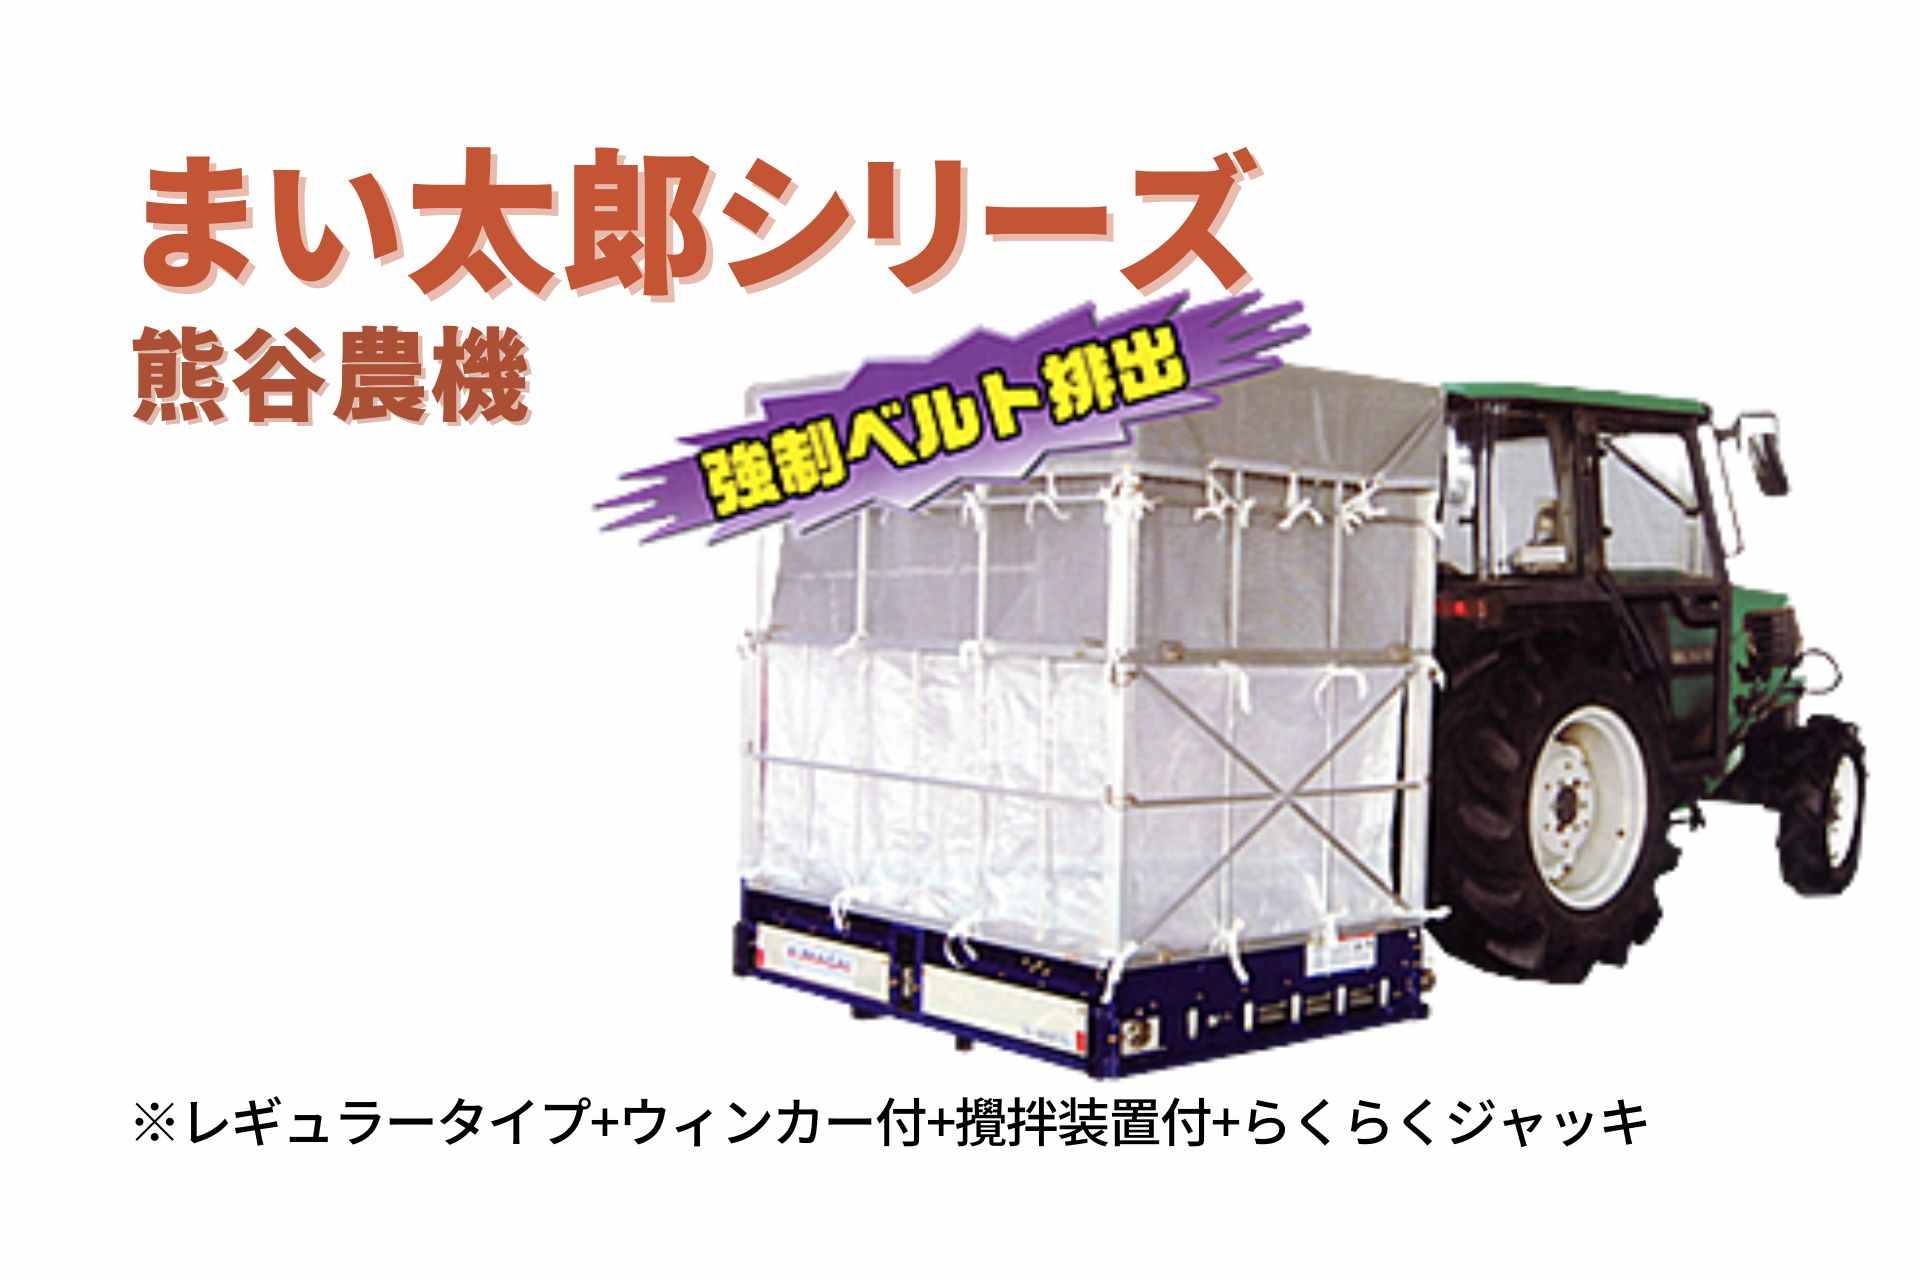 籾殻散布機 まい太郎 レギュラータイプ ウィンカー付 攪拌機能付 らくらくジャッキ MTA-40RJW(L) 熊谷農機